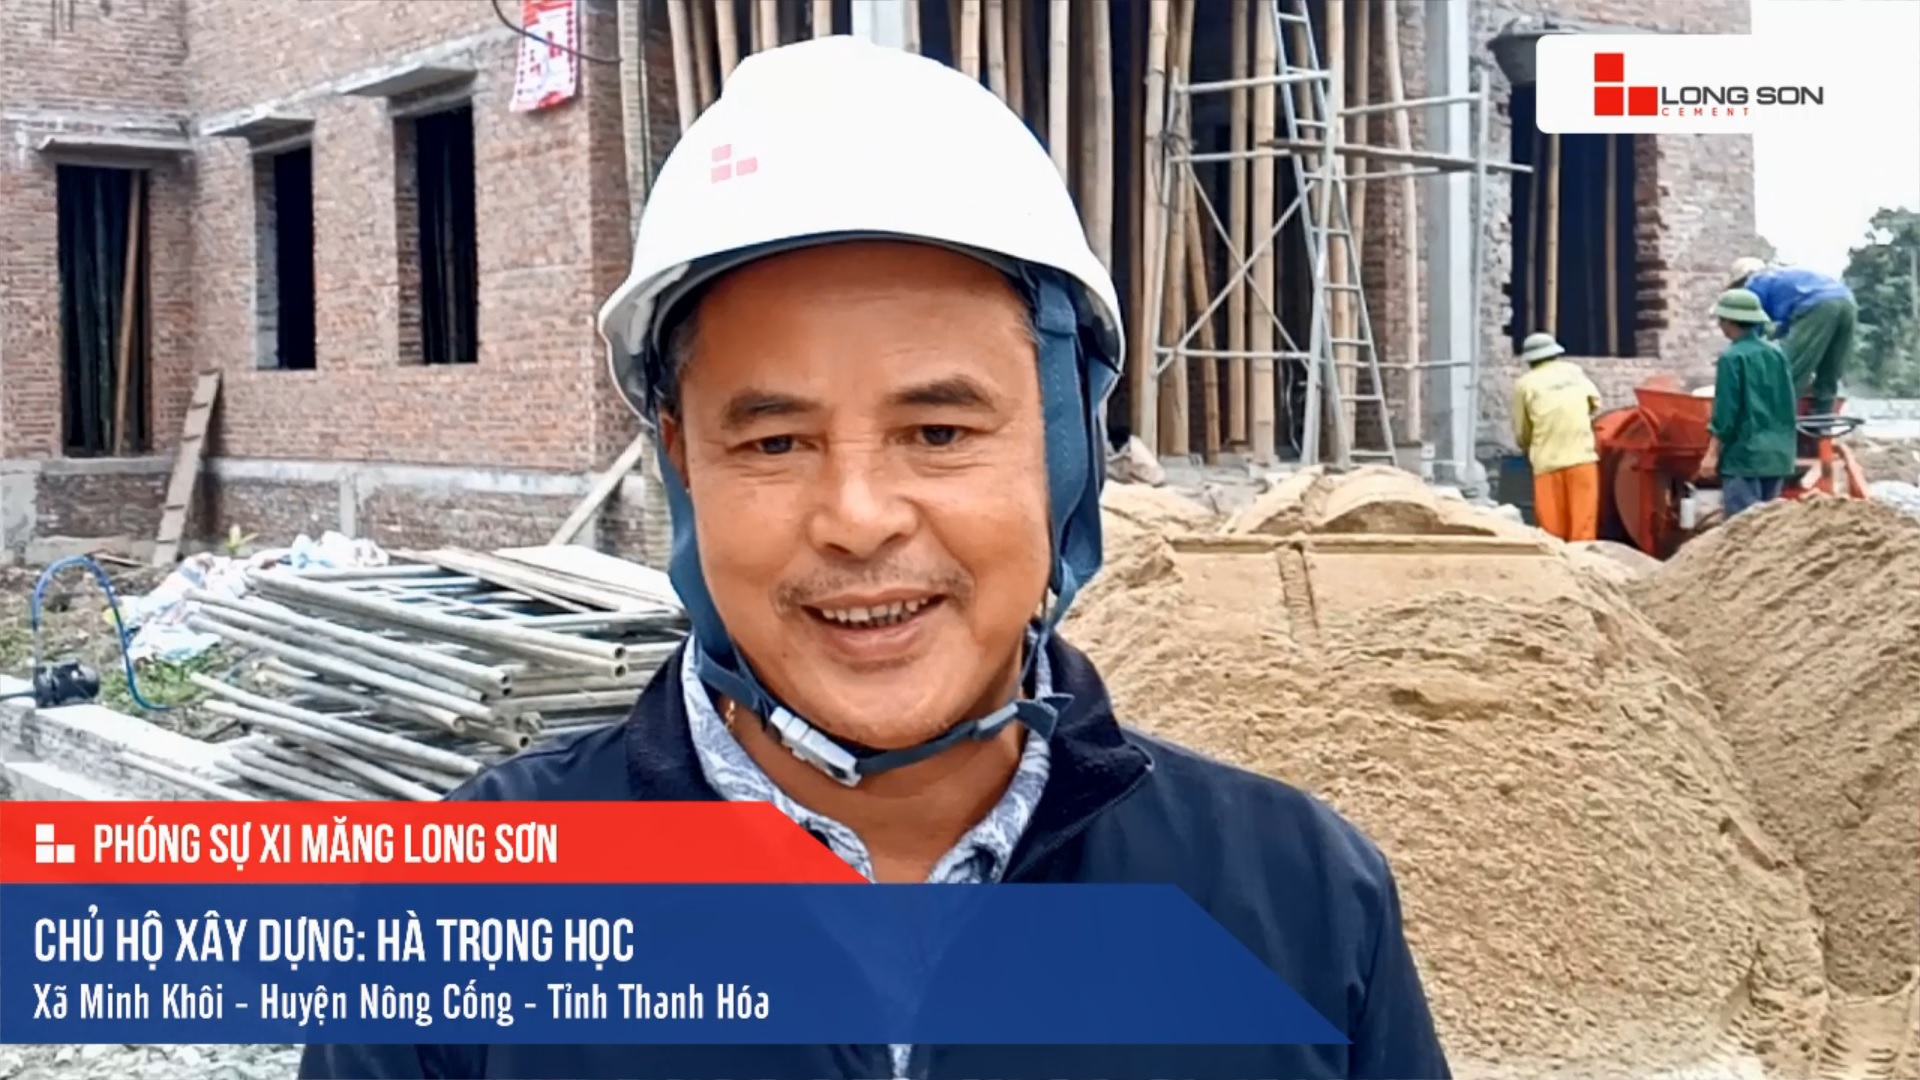 Phóng sự công trình sử dụng Xi măng Long Sơn tại Thanh Hóa 30.11.2020